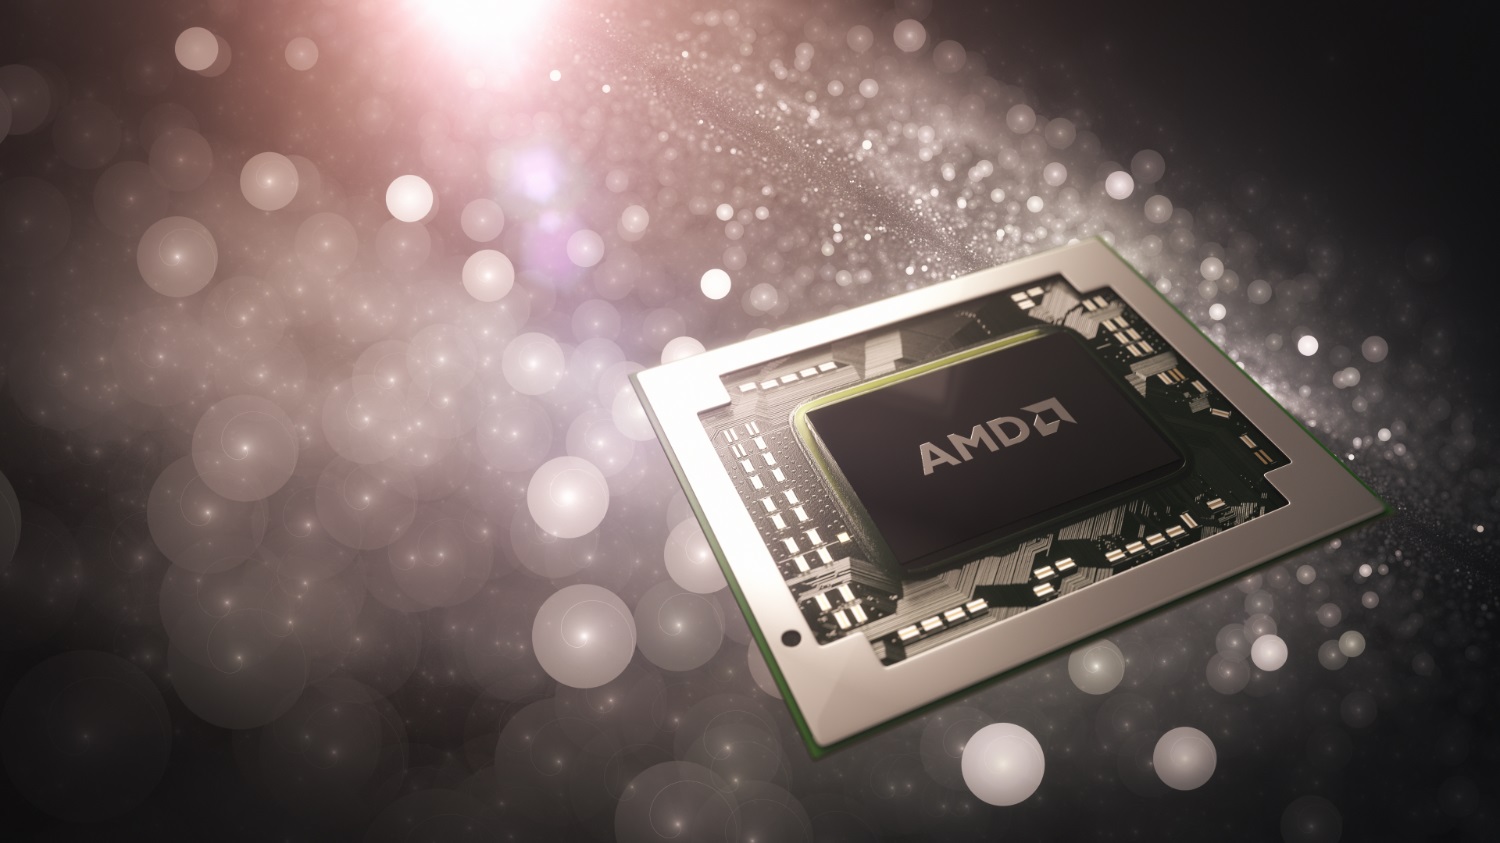 Le cours de l'action AMD bat son record historique datant d'il y a 20 ans